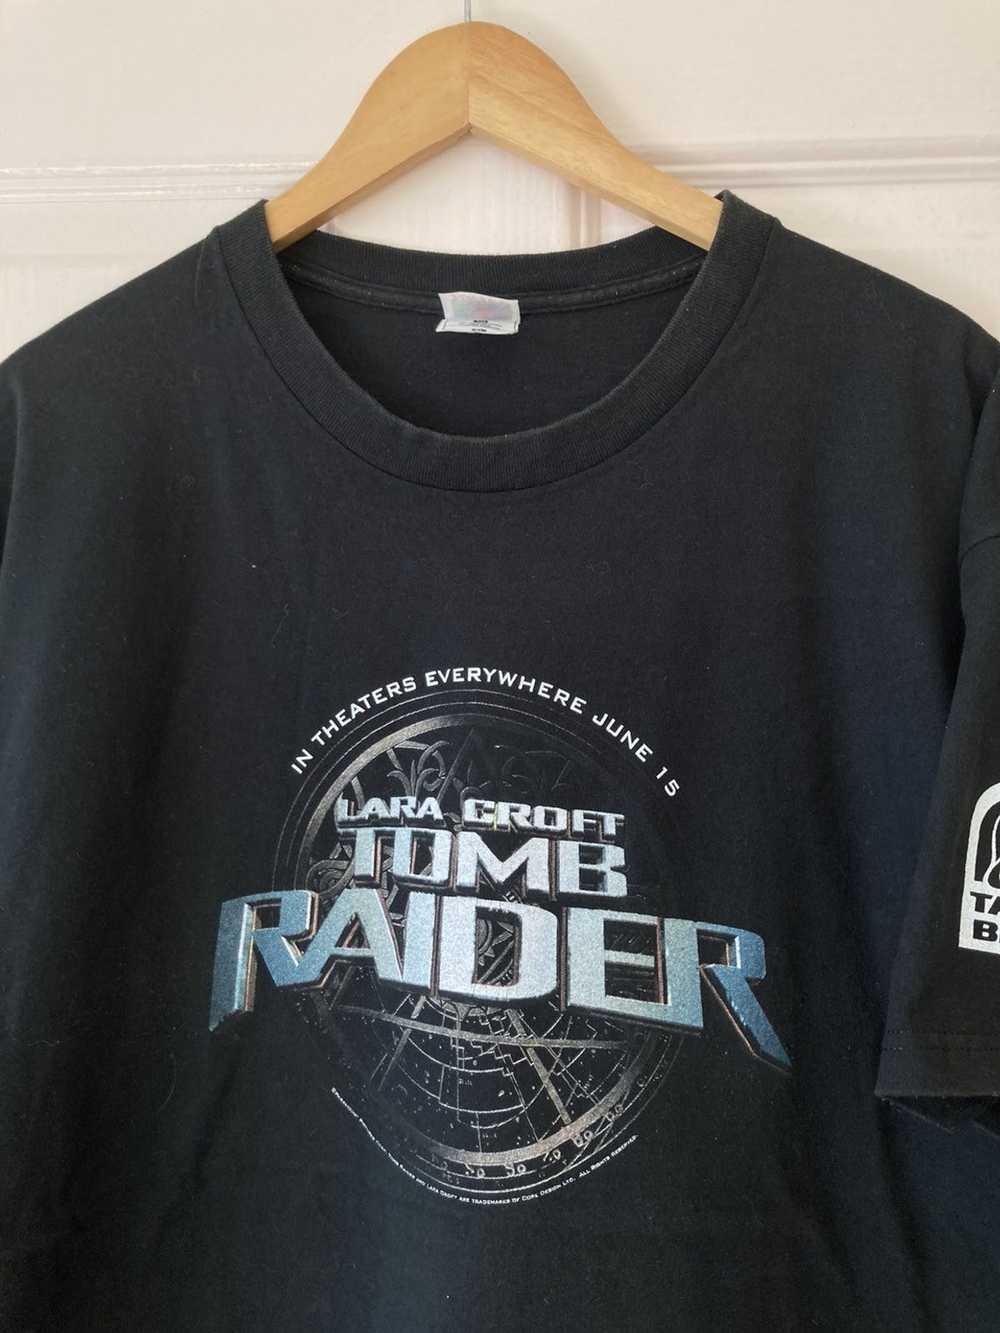 Vintage Vintage Tomb Raider T-shirt - image 2